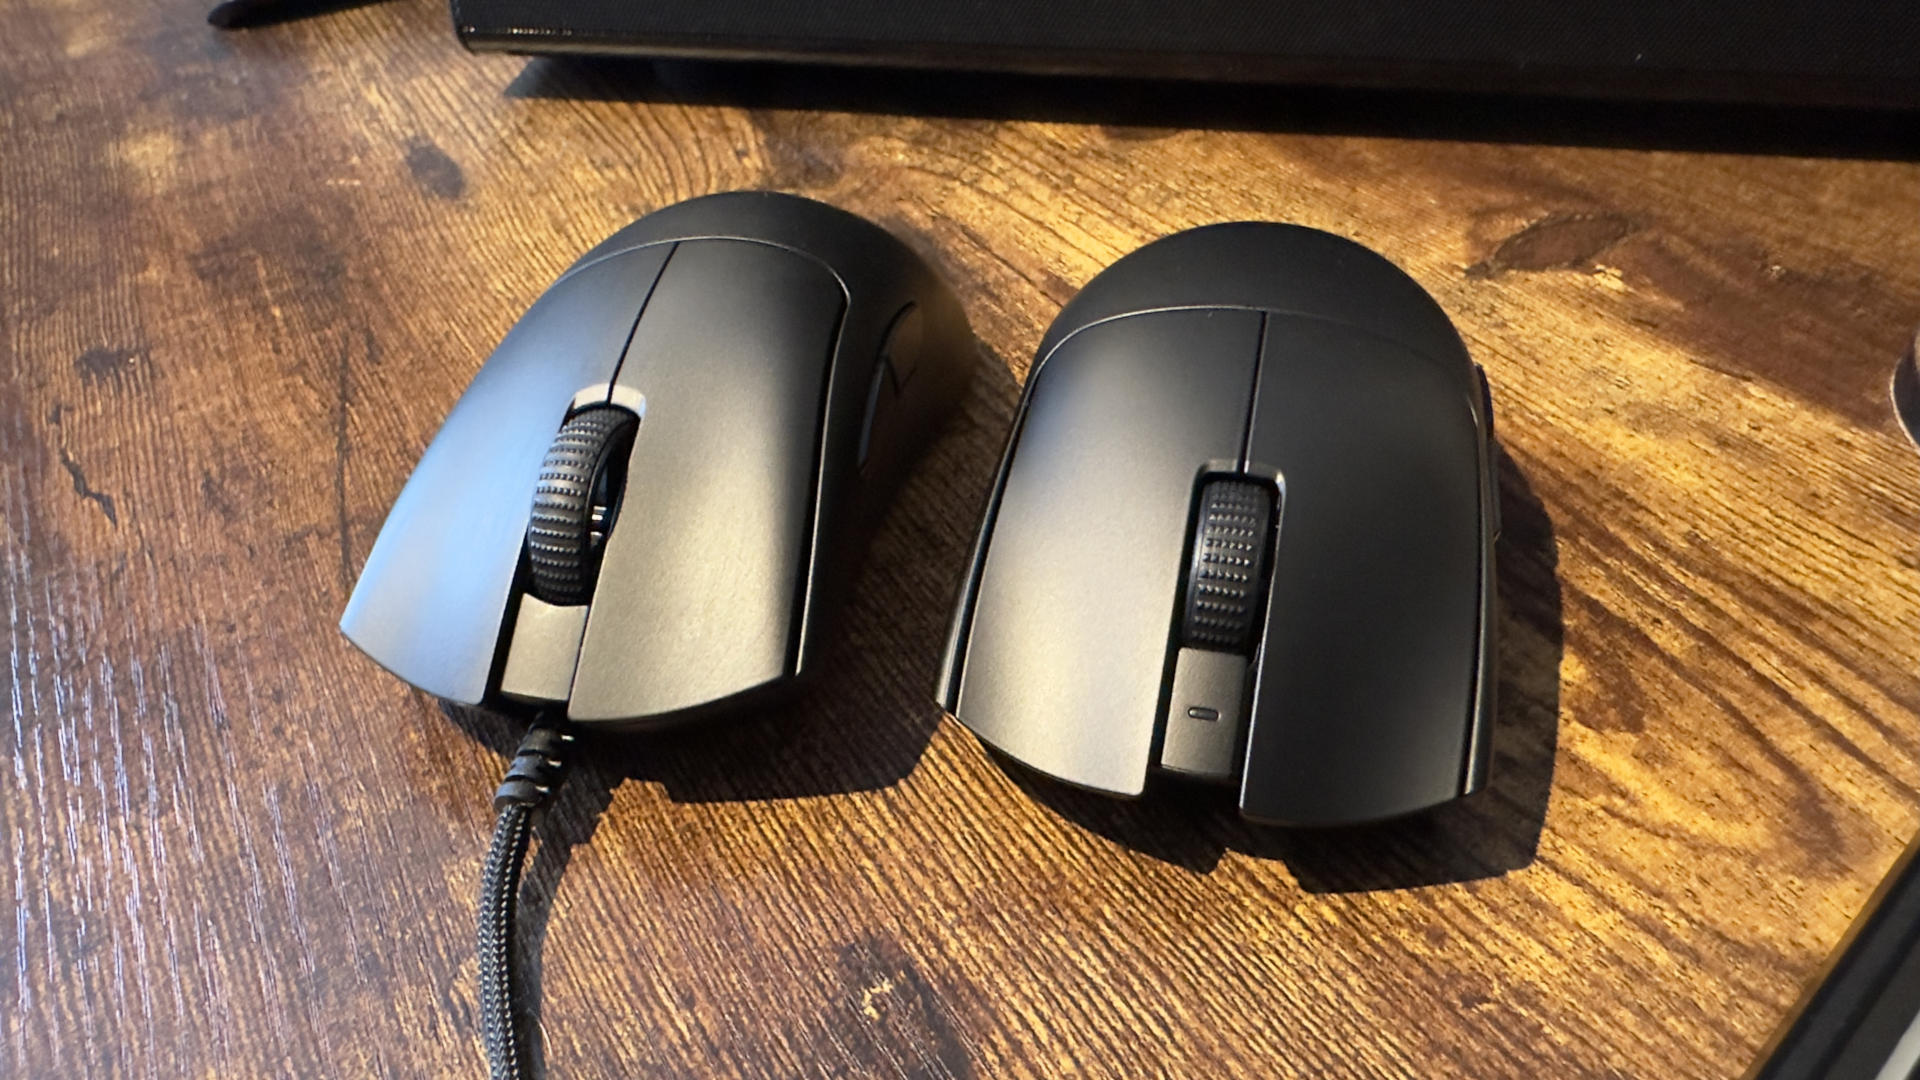 A Razer DeathAdder V3 (left) next to a Razer Viper V3 Pro (right) gaming mouse